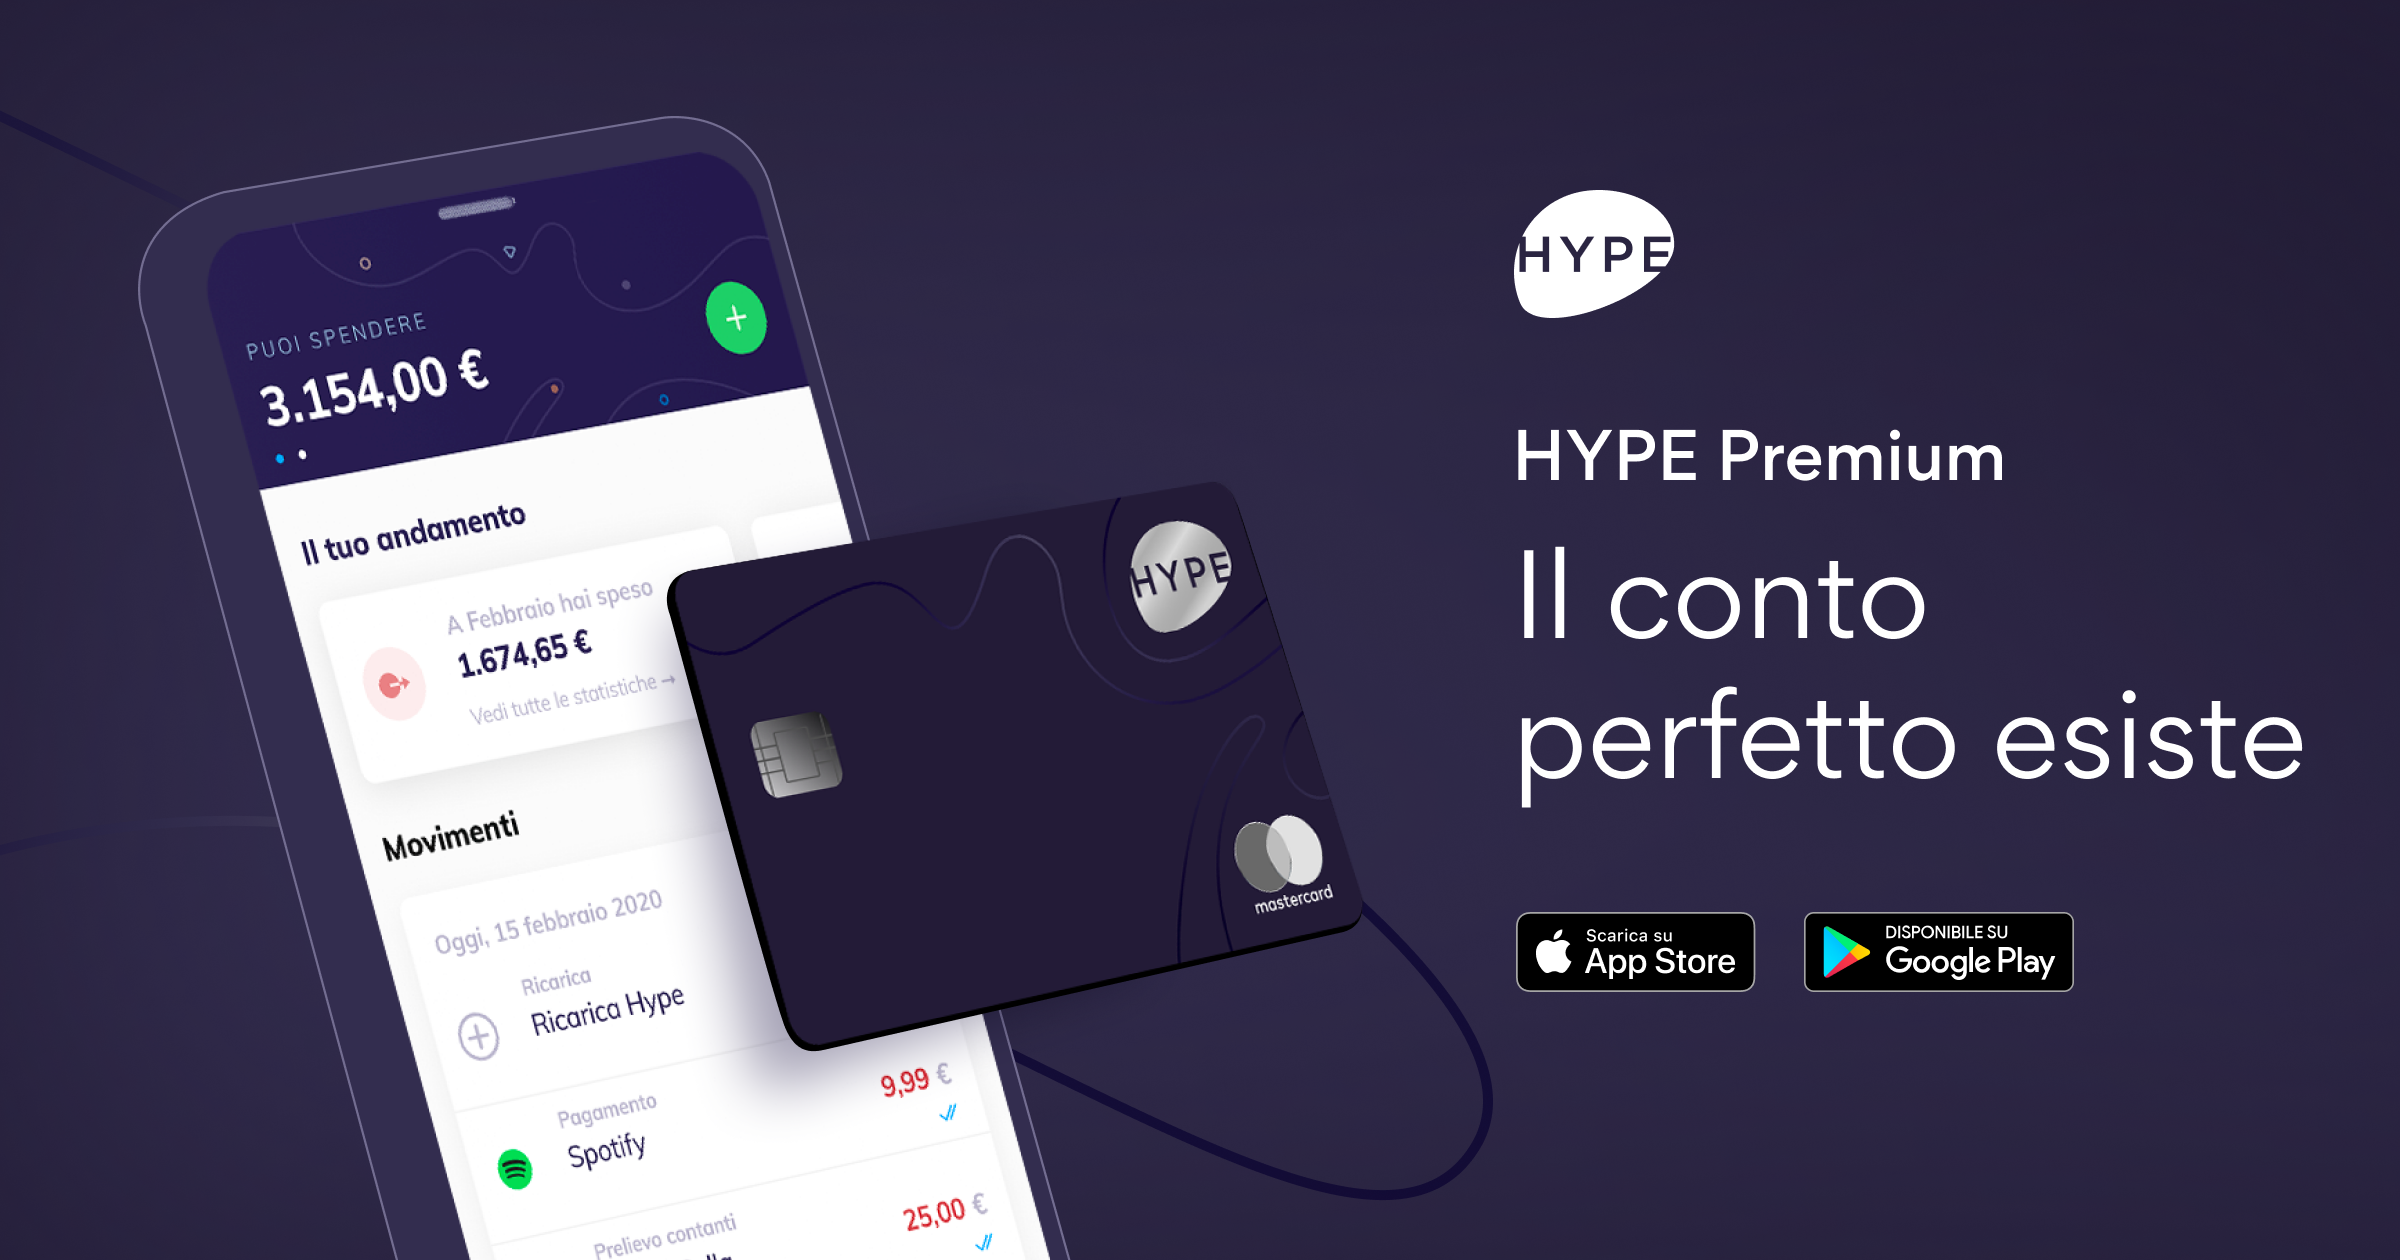 Hype Premium: attivazione, costi e vantaggi